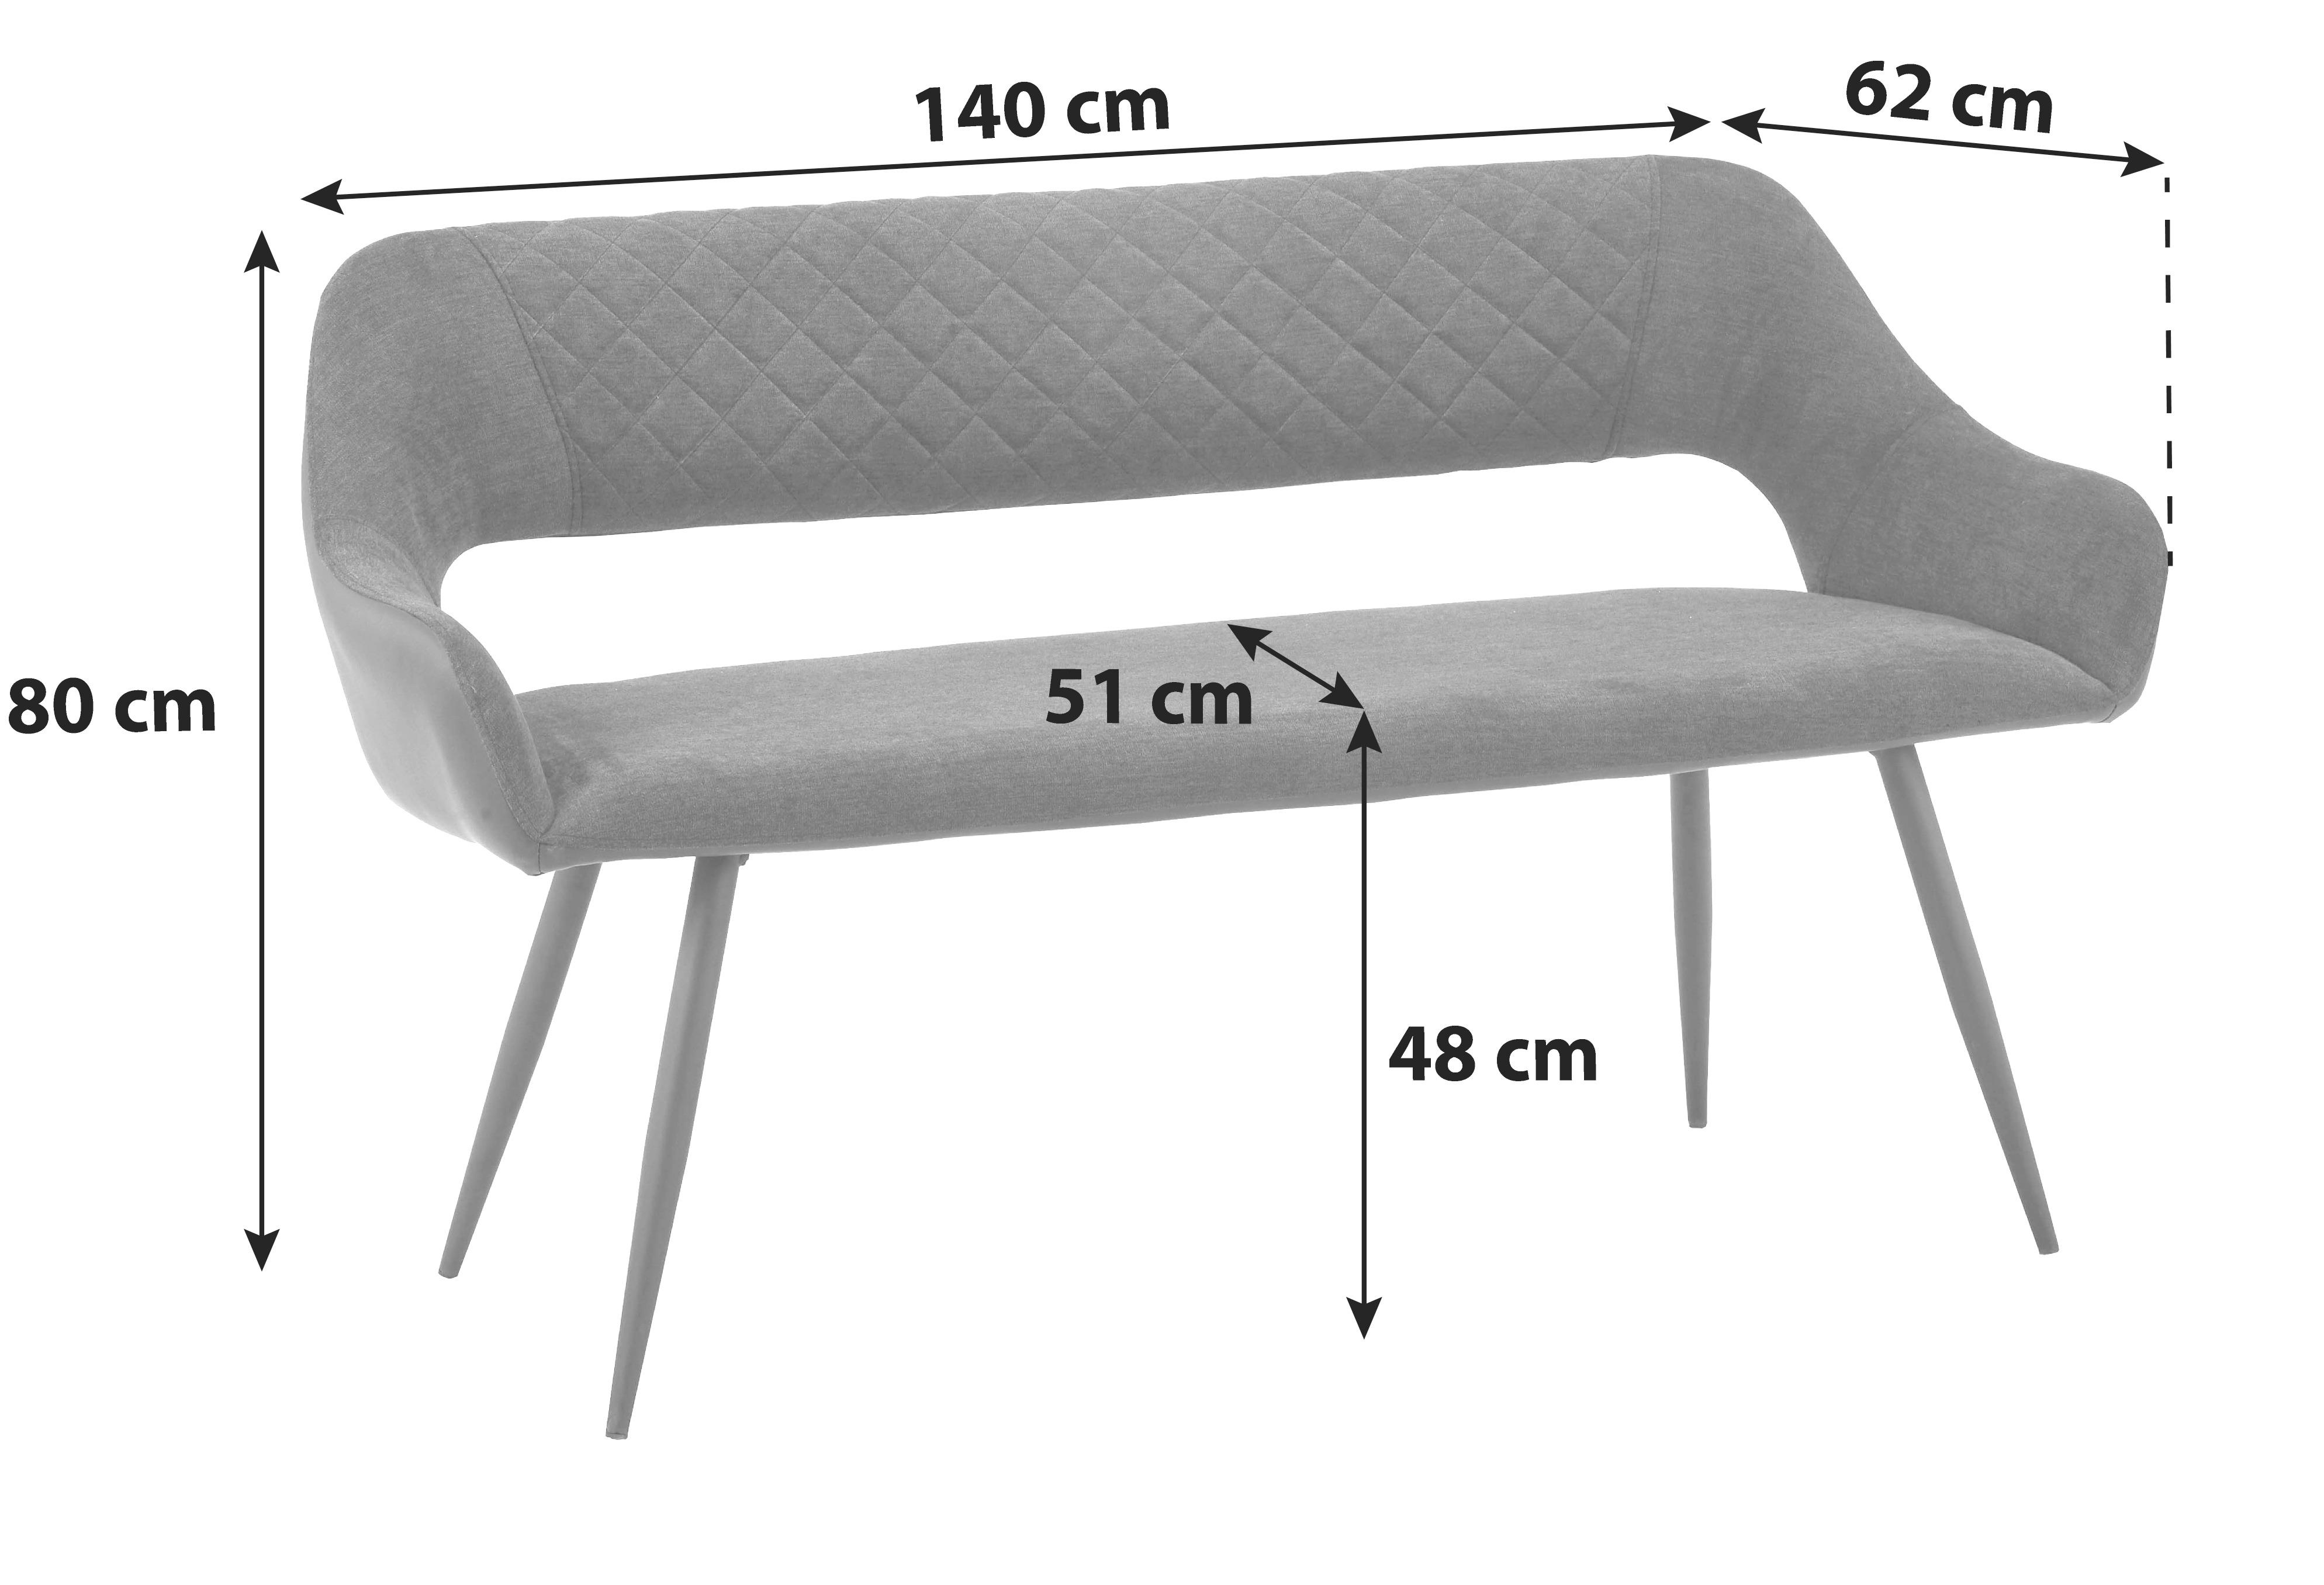 Sitzbank mit Lehne Gepolstert Anthrazit Porto B: 140 cm - Anthrazit/Schwarz, MODERN, Textil/Metall (140/80/62cm) - MID.YOU